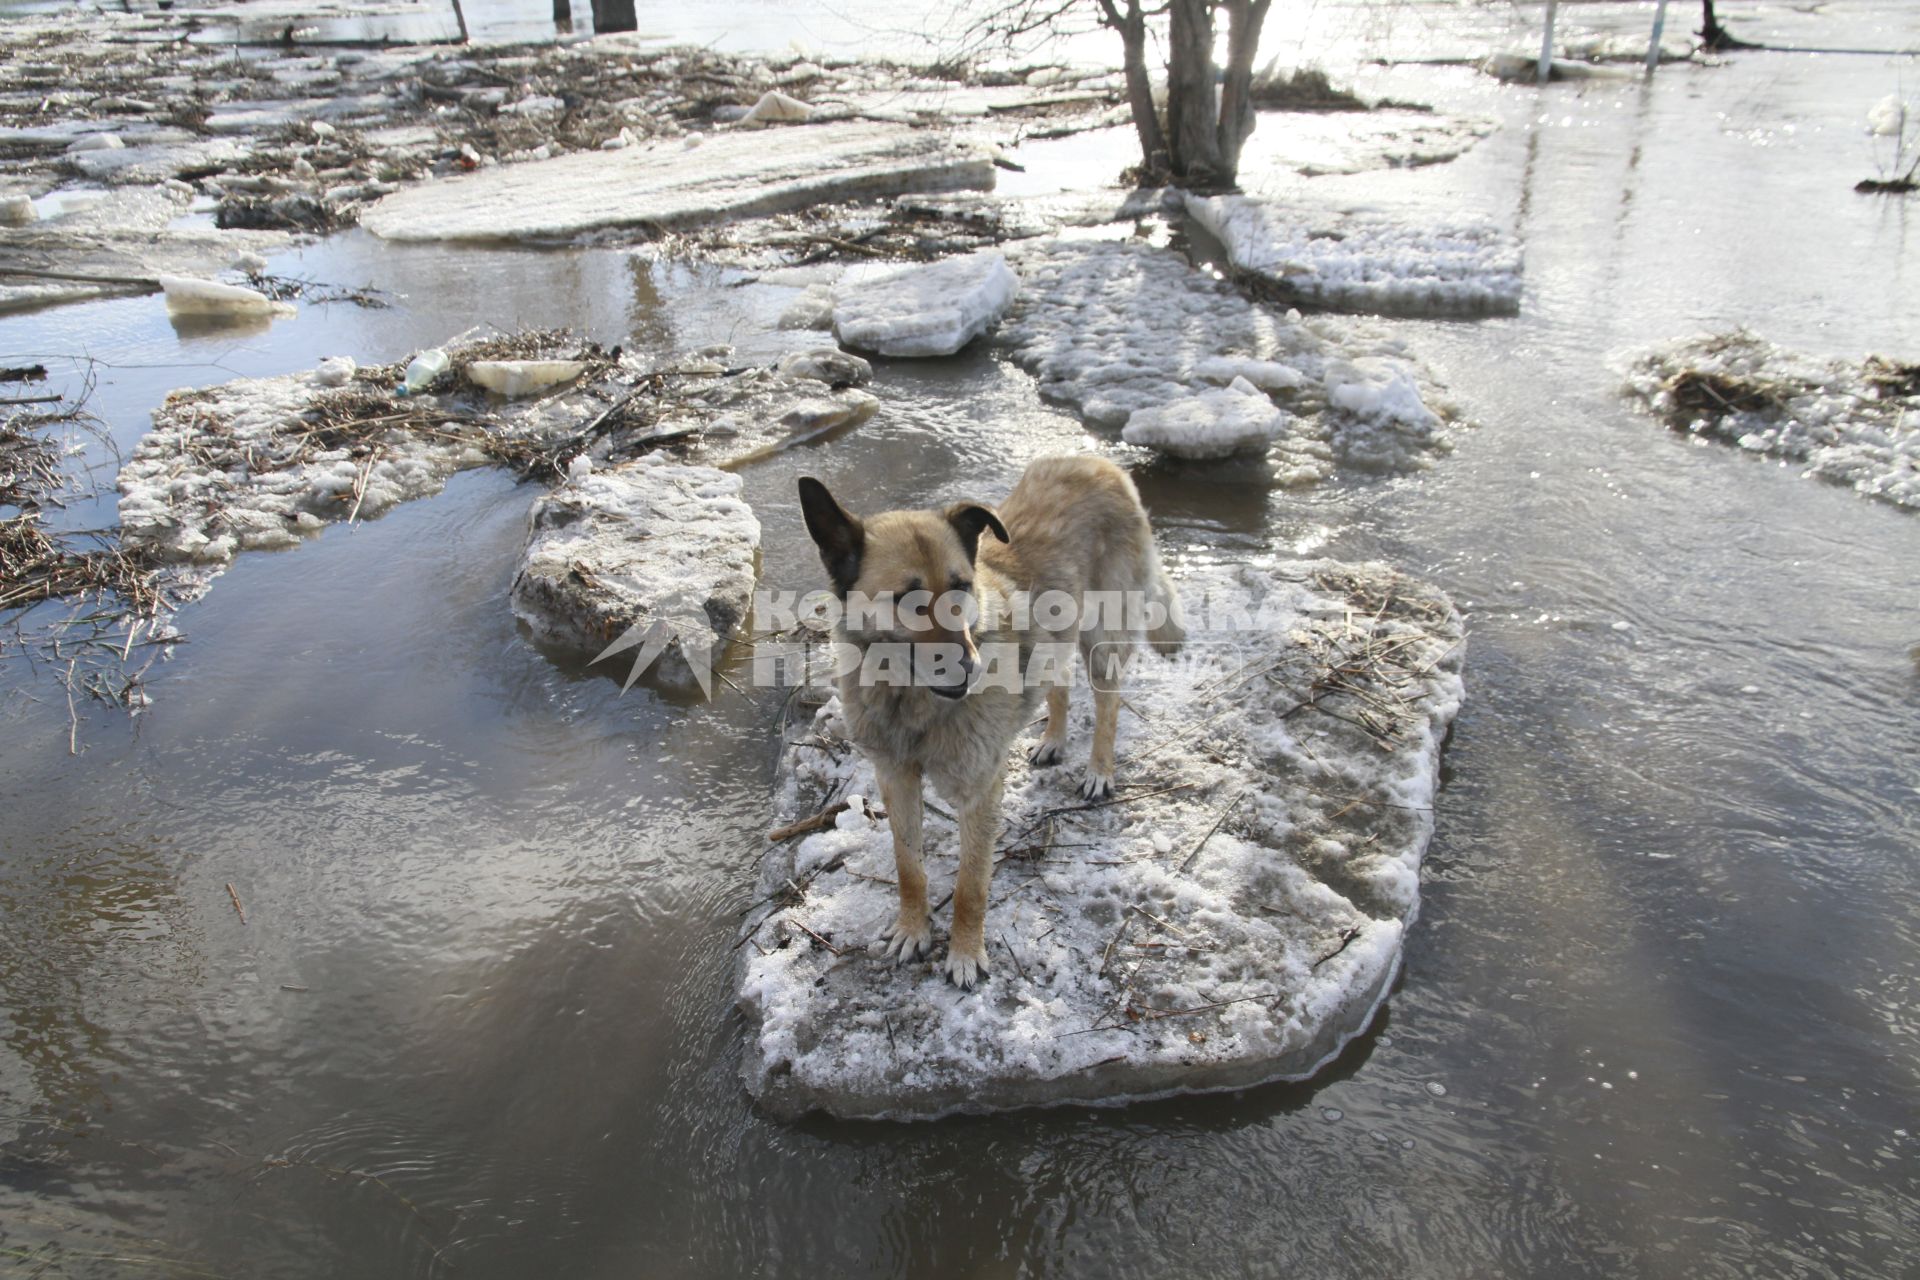 Алтайский край. Паводок в пригороде Барнаула. Река Барнаулка вышла из берегов и подтопила жилые дома.